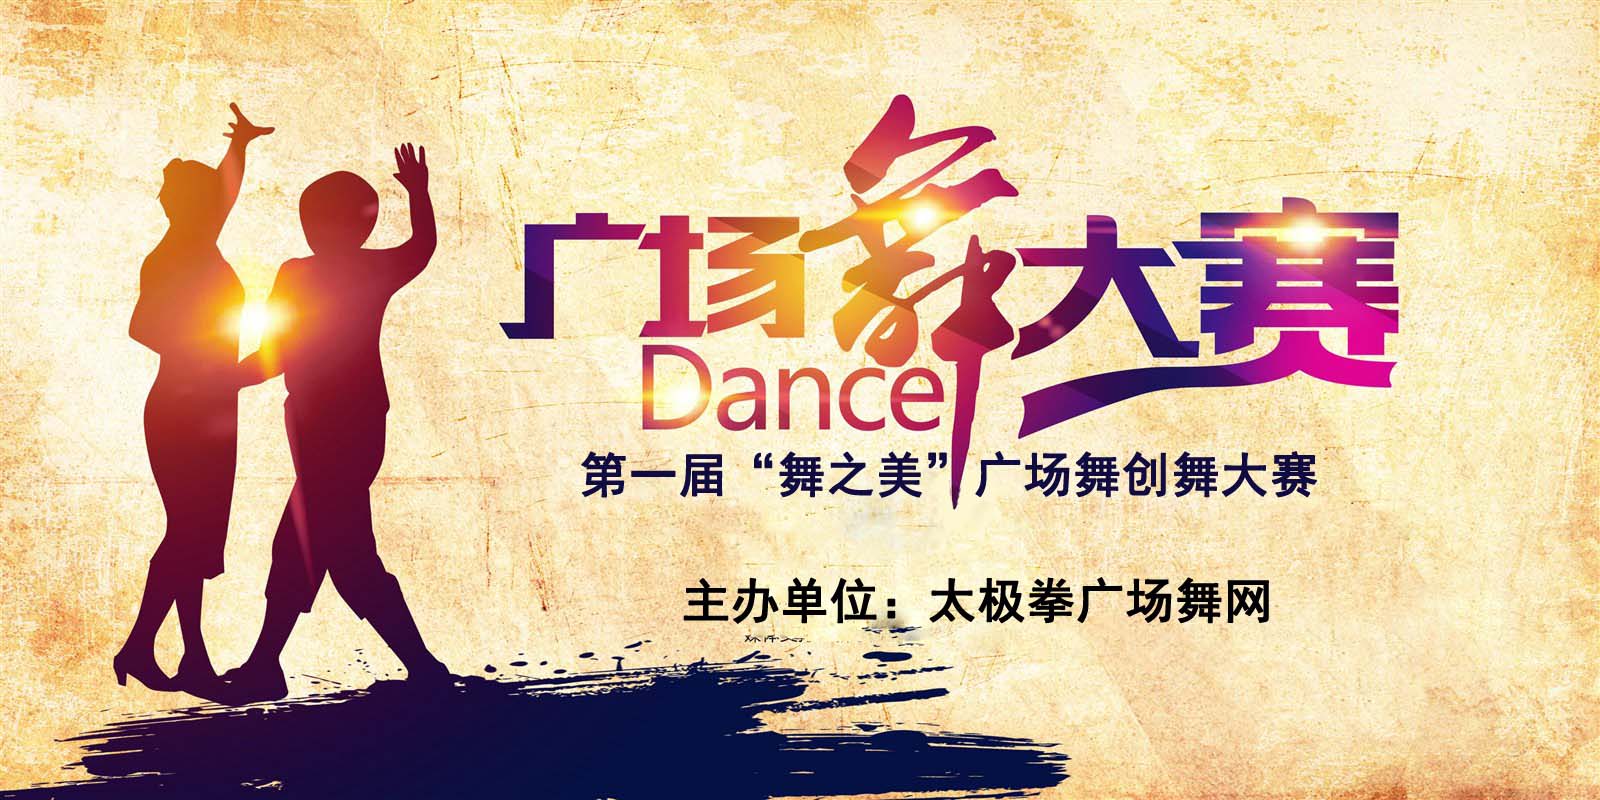 太极拳广场舞网第一届“舞之美”创舞大赛正式开始报名!